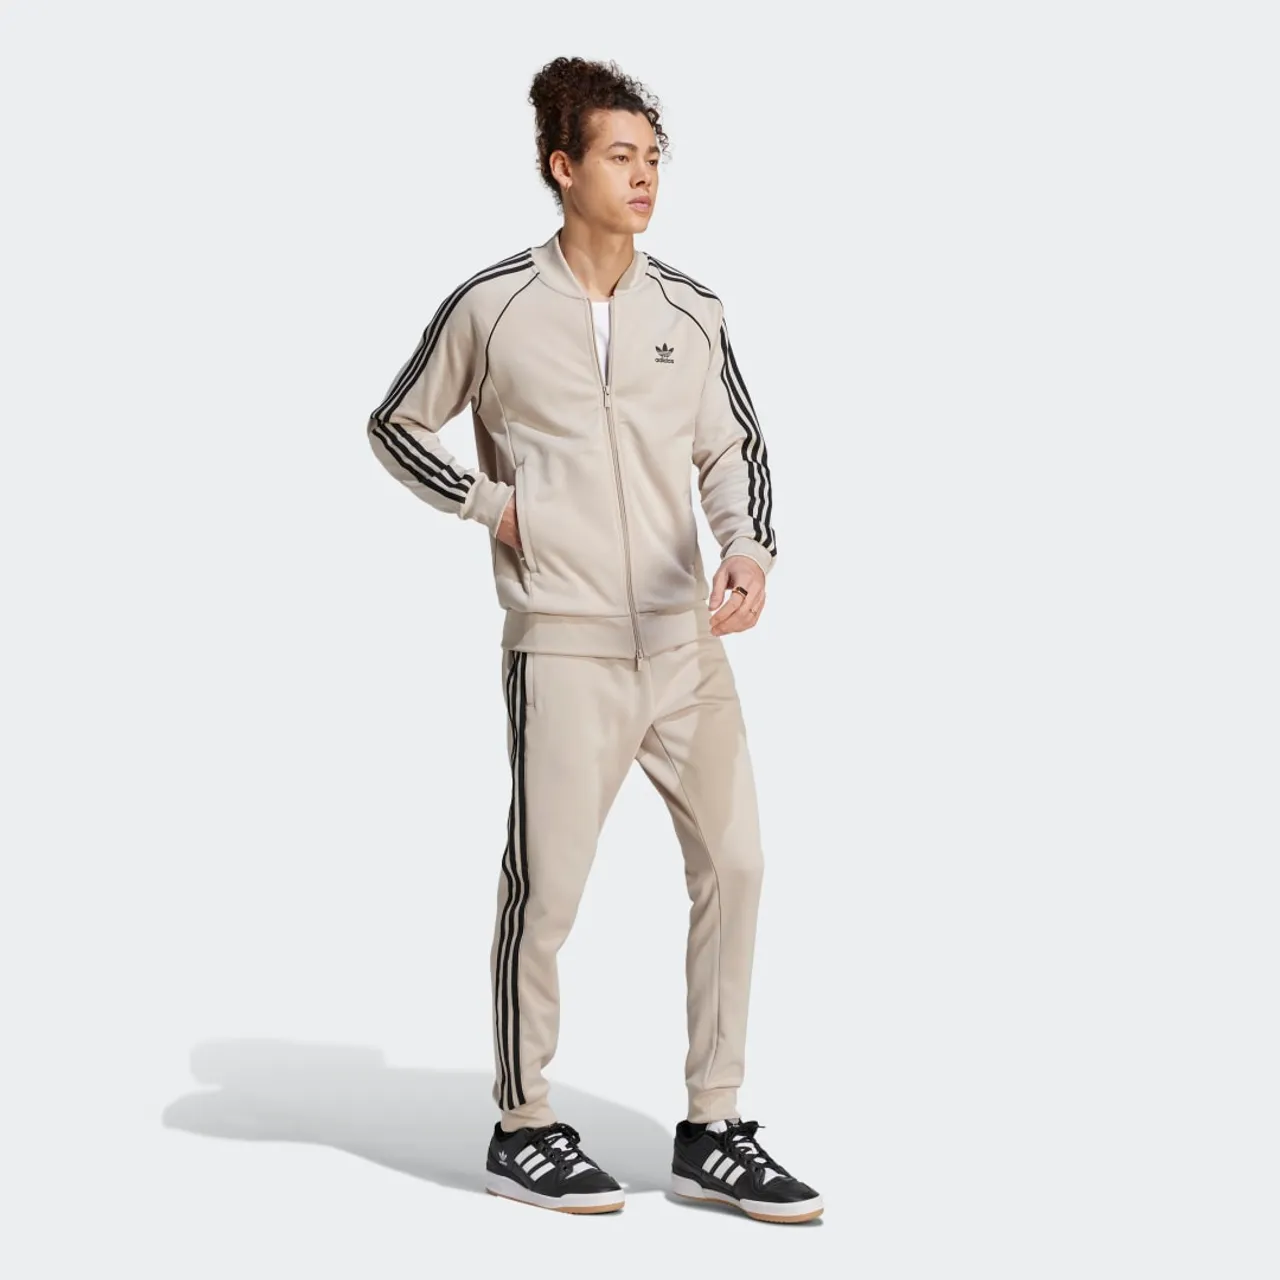 Adidas Originals Adicolor Superstar Trainingsjacke, Trainingsjacken,  Bekleidung, wonder beige/black, Größe: XL, verfügbare Größen:XL IL2495 -  Preise vergleichen